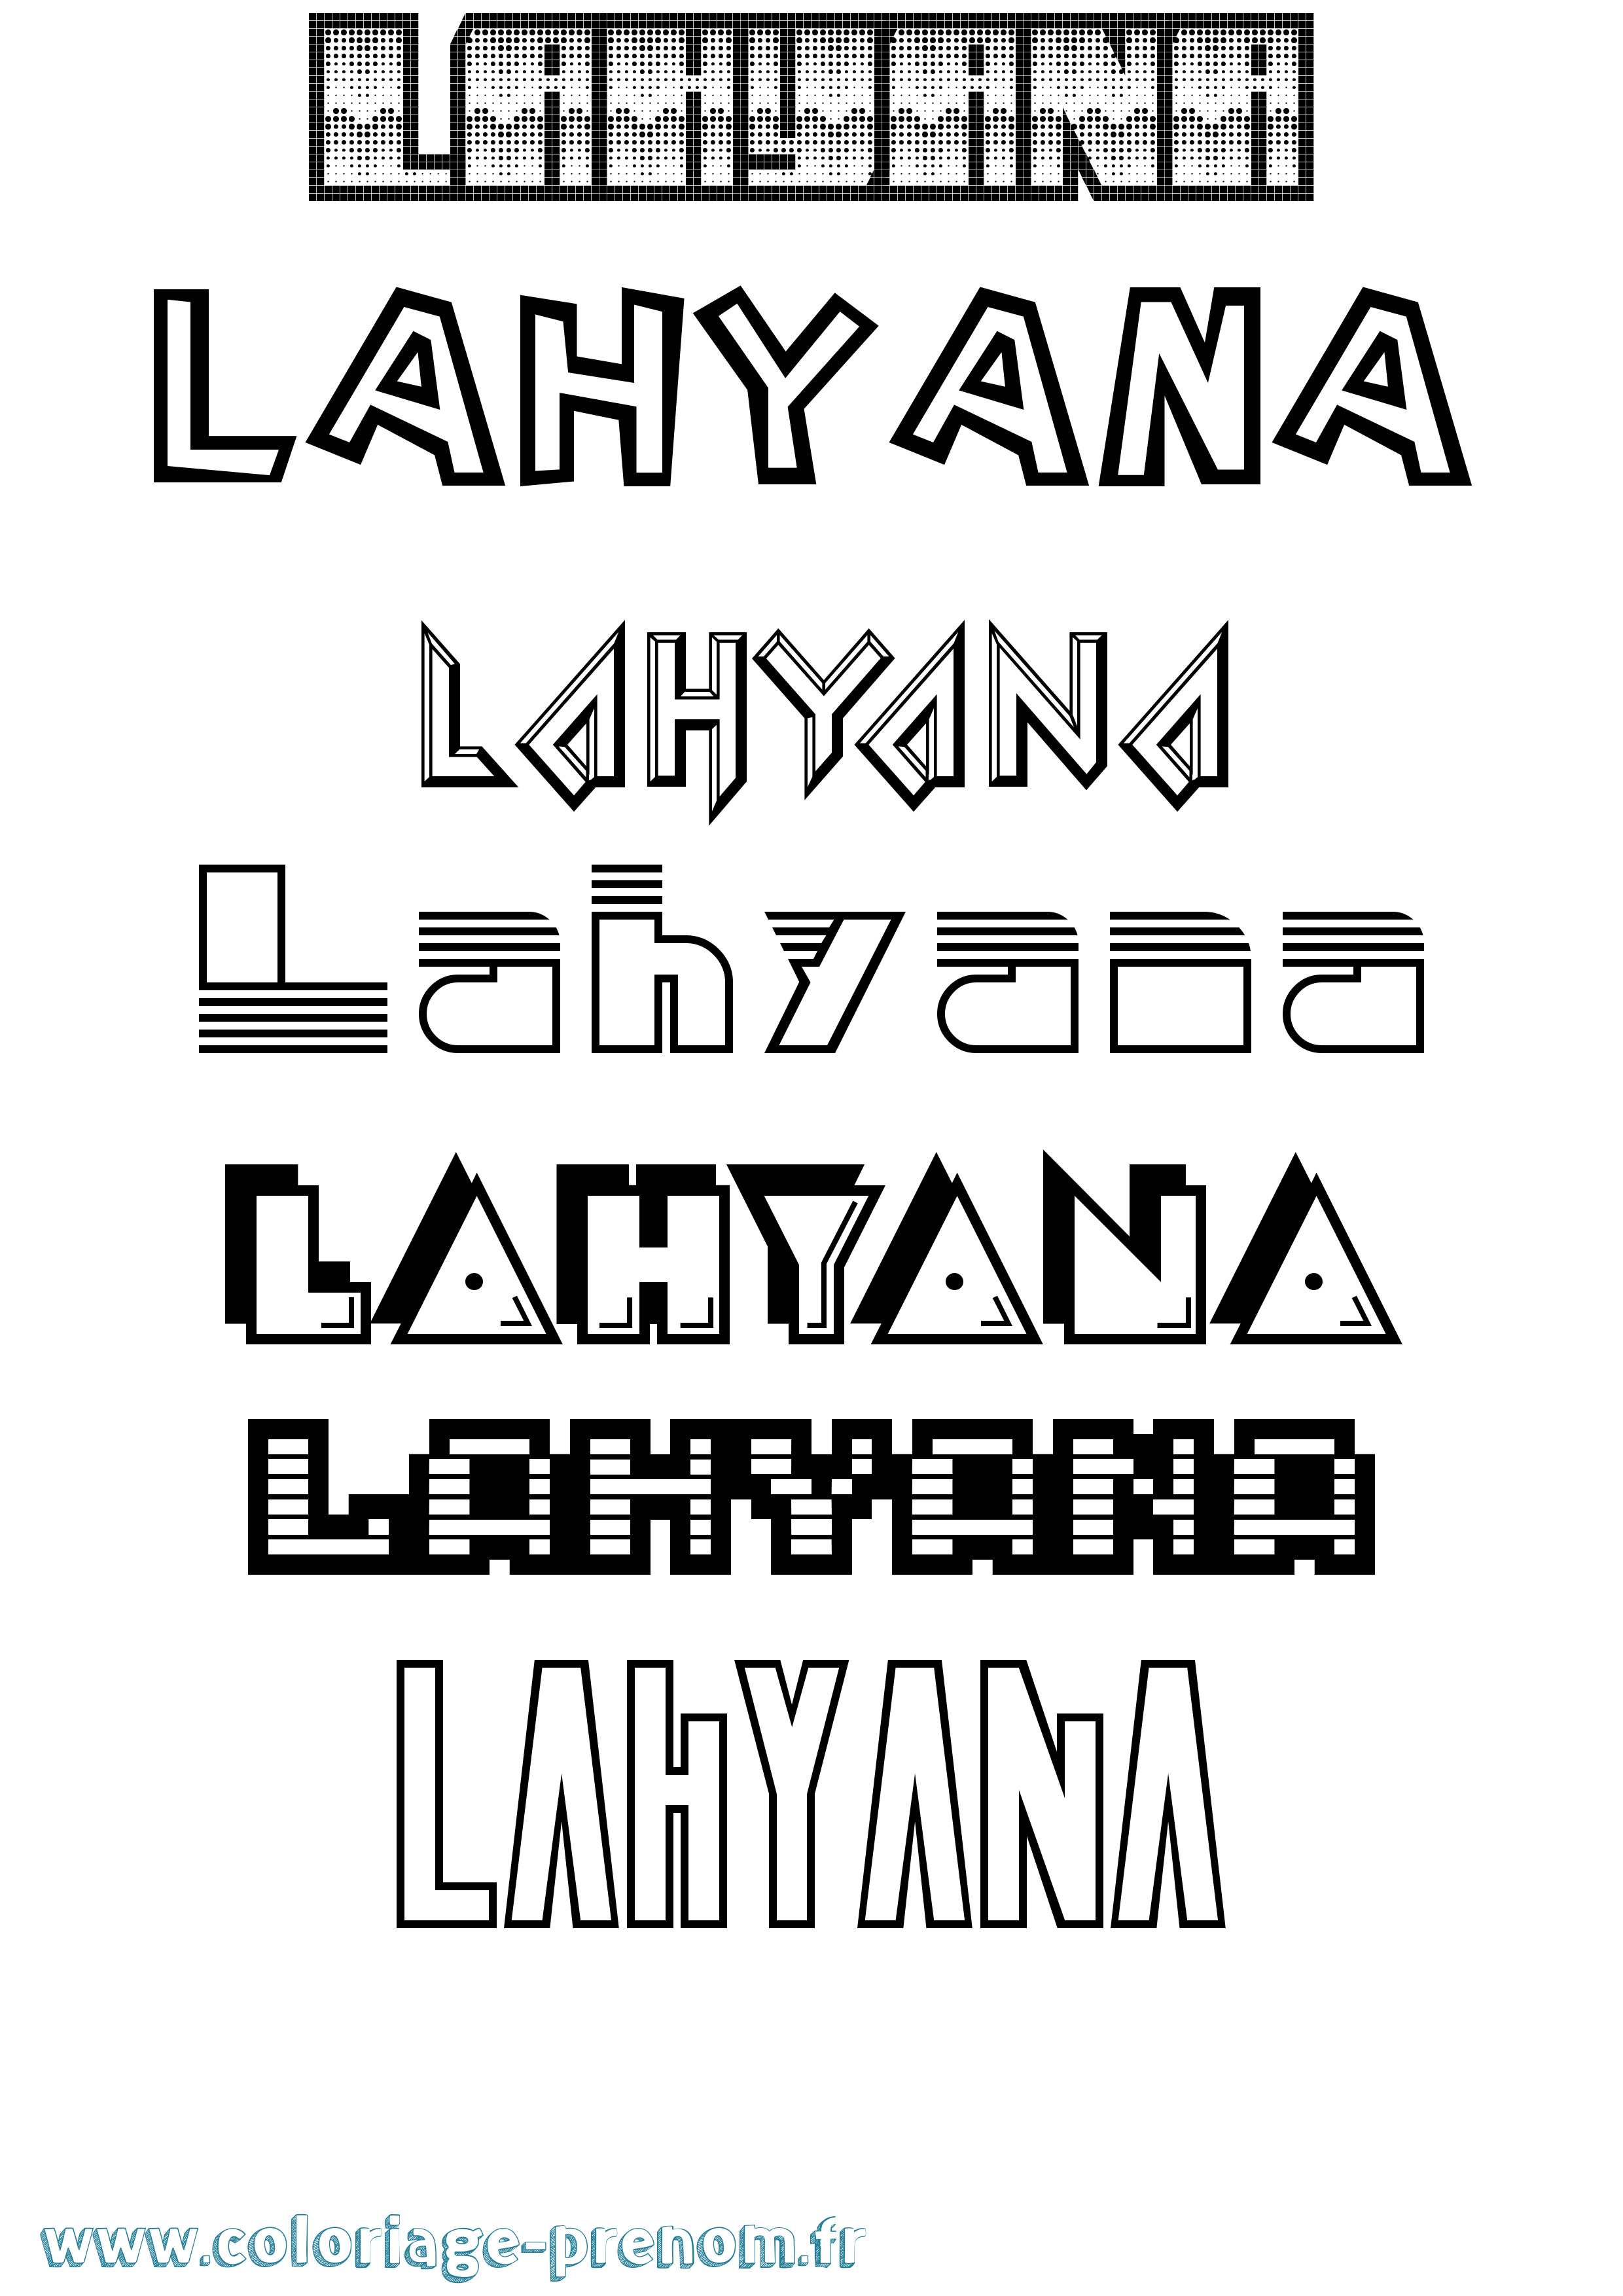 Coloriage prénom Lahyana Jeux Vidéos